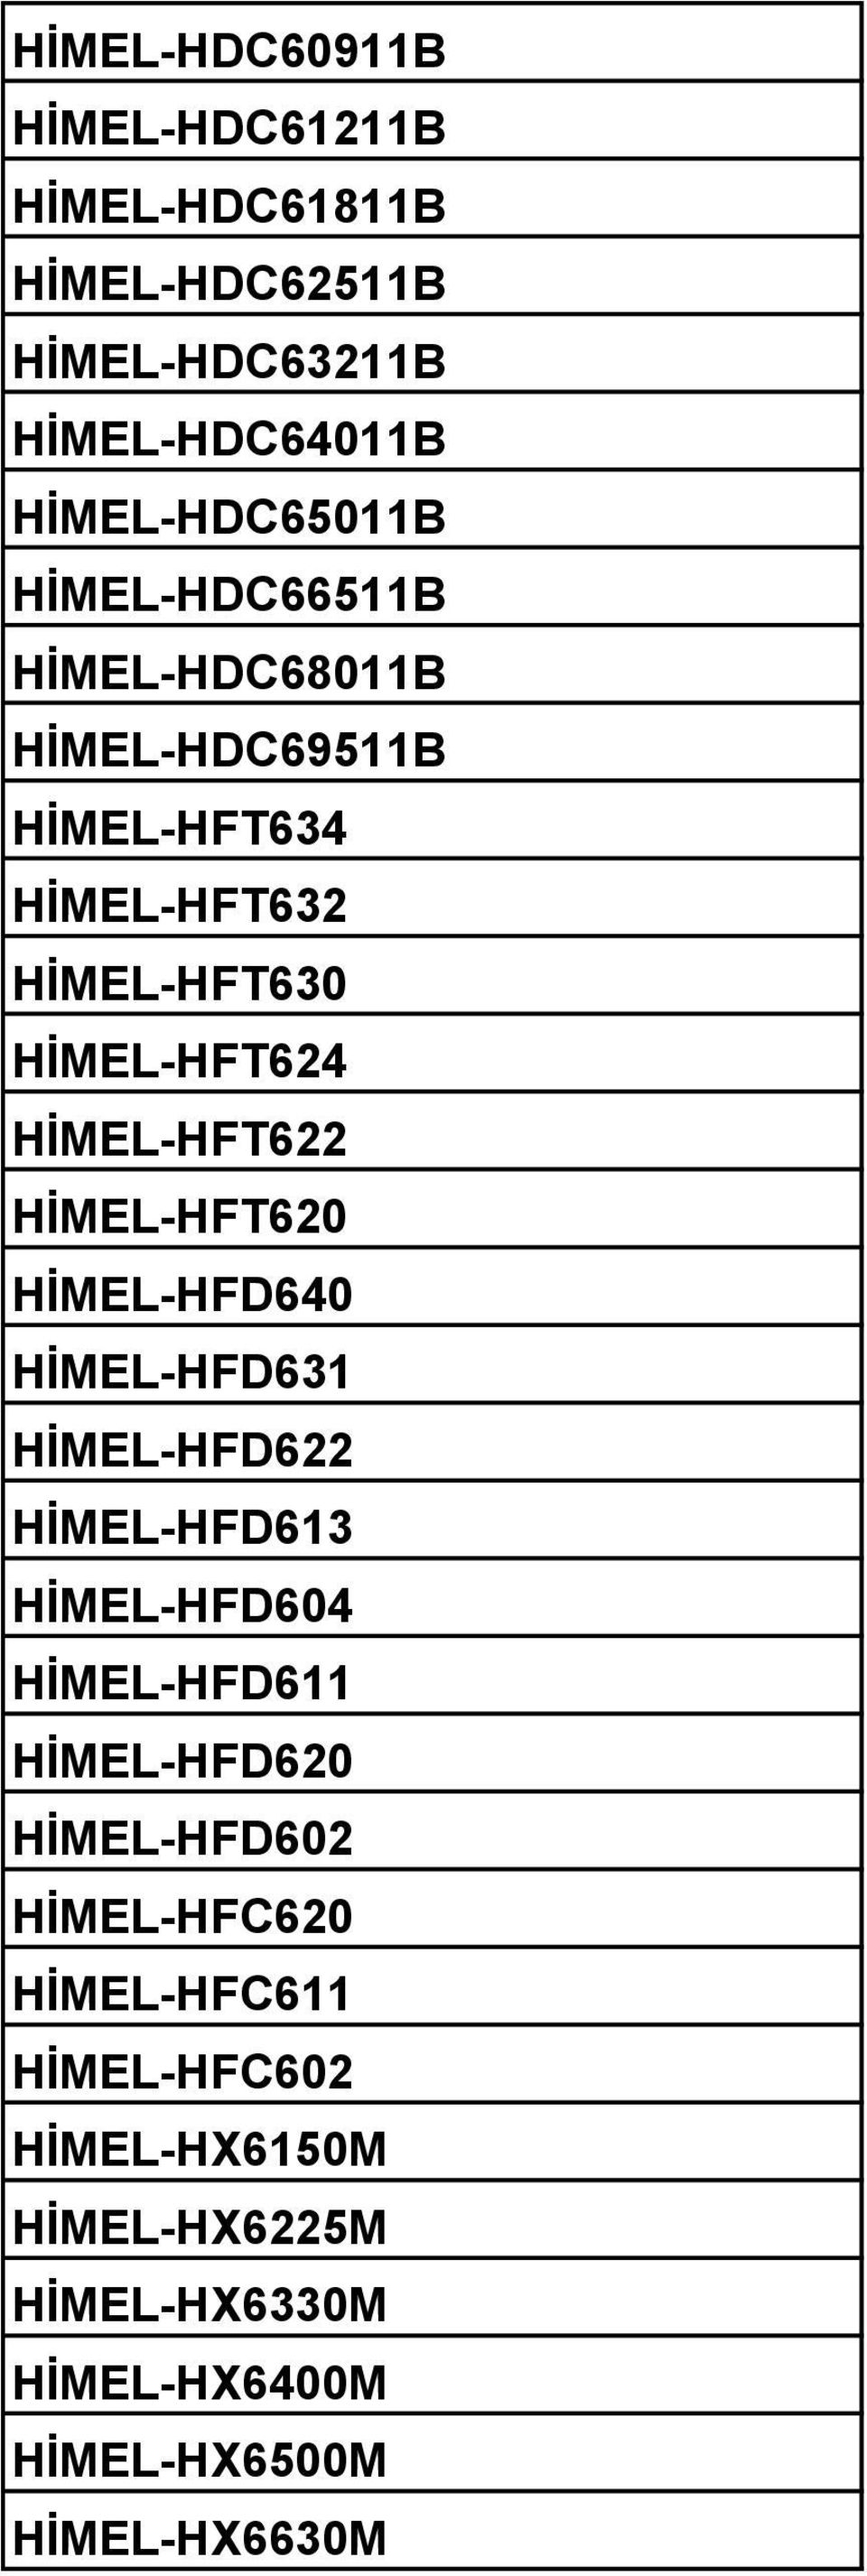 HİMEL-HFT620 HİMEL-HFD640 HİMEL-HFD631 HİMEL-HFD622 HİMEL-HFD613 HİMEL-HFD604 HİMEL-HFD611 HİMEL-HFD620